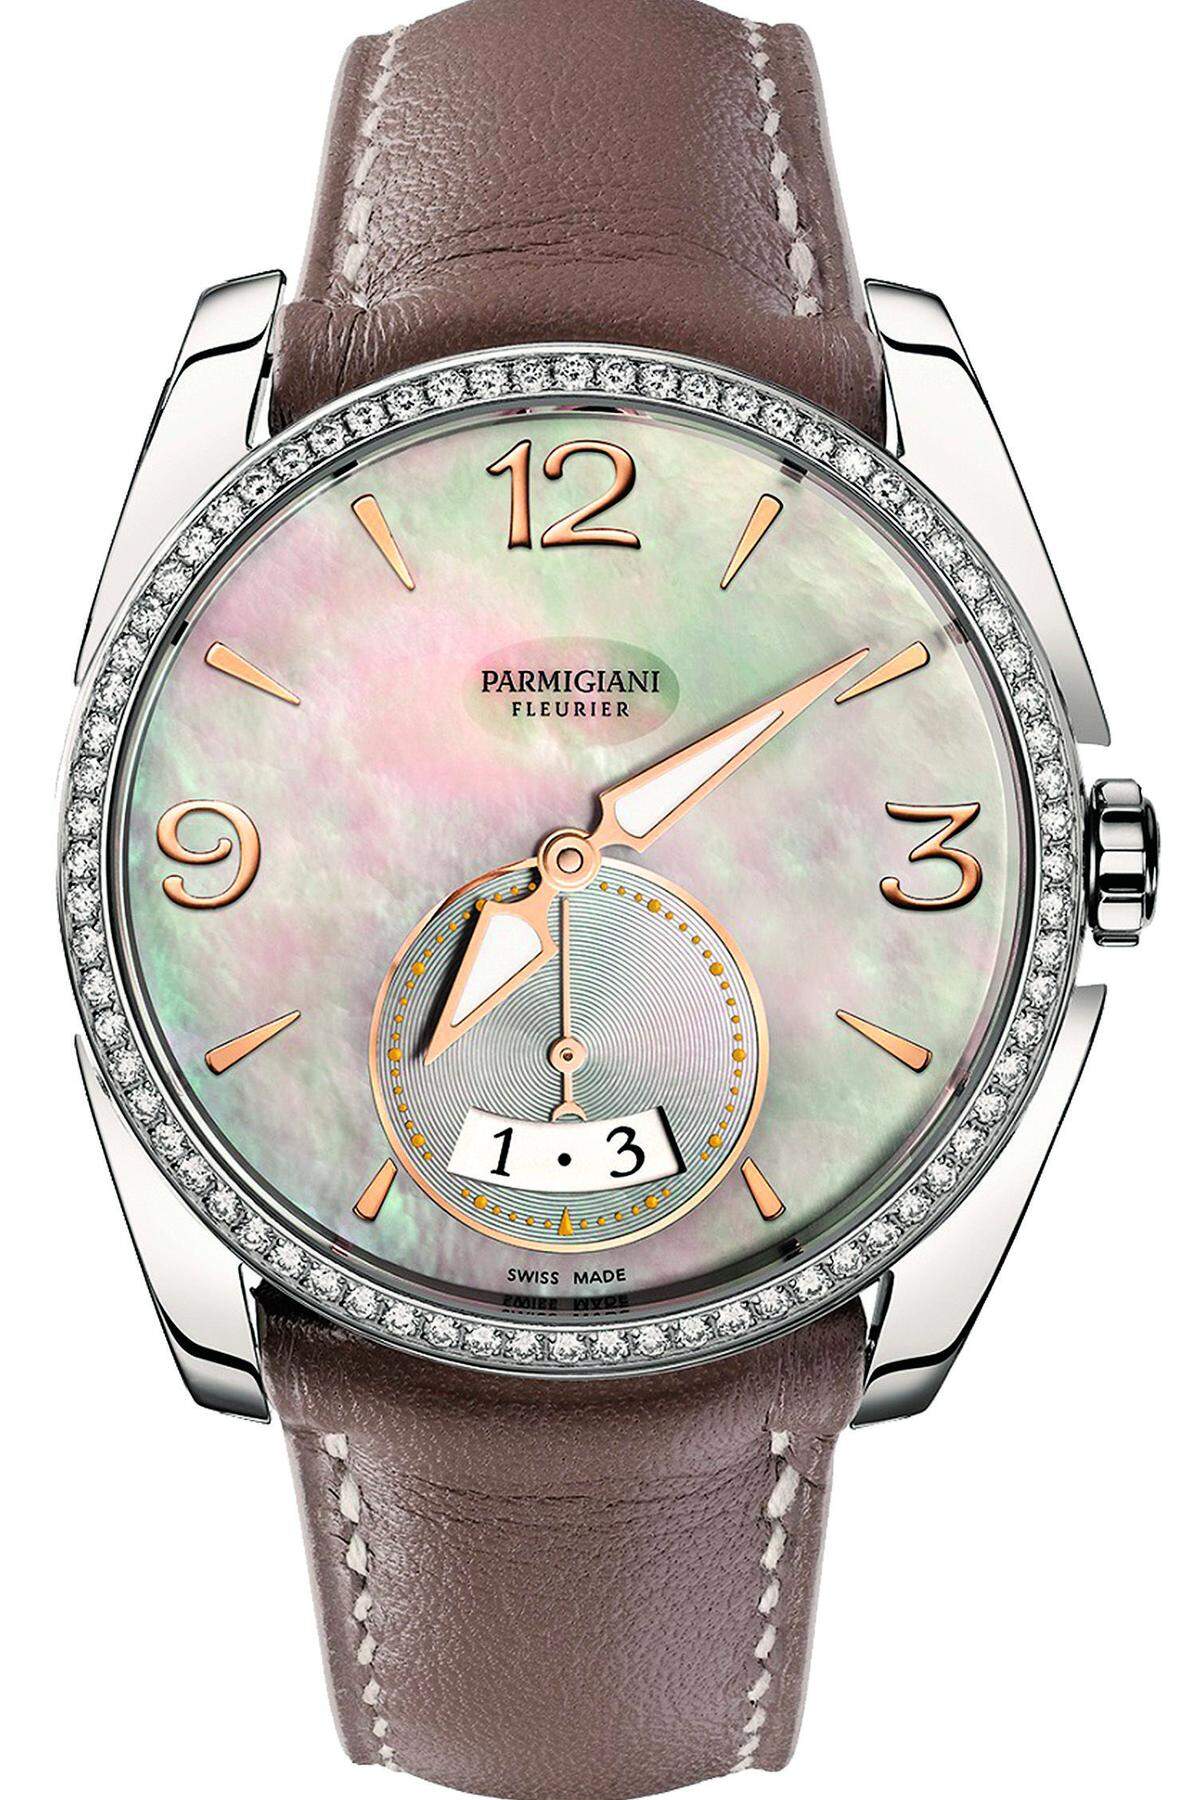 Mit diesem Zeitmesser haben Sie eine ganz besondere Uhr am Handgelenk! Ihr individuelles Äußeres ist aufgrund der starken Zeiger und der ungewöhnlichen Datumsanzeige gleichsam markant als auch durch den Einsatz der Brillanten und des Perlmuttzifferblattes geschmackvoll gestaltet. Das Manufaktur-Automatikkaliber kann mit einer 50-Stunden-Gangreserve aufwarten. Die Kalbslederbänder lässt Parmigiani vom französischen Lederspezialisten Hermès fertigen.